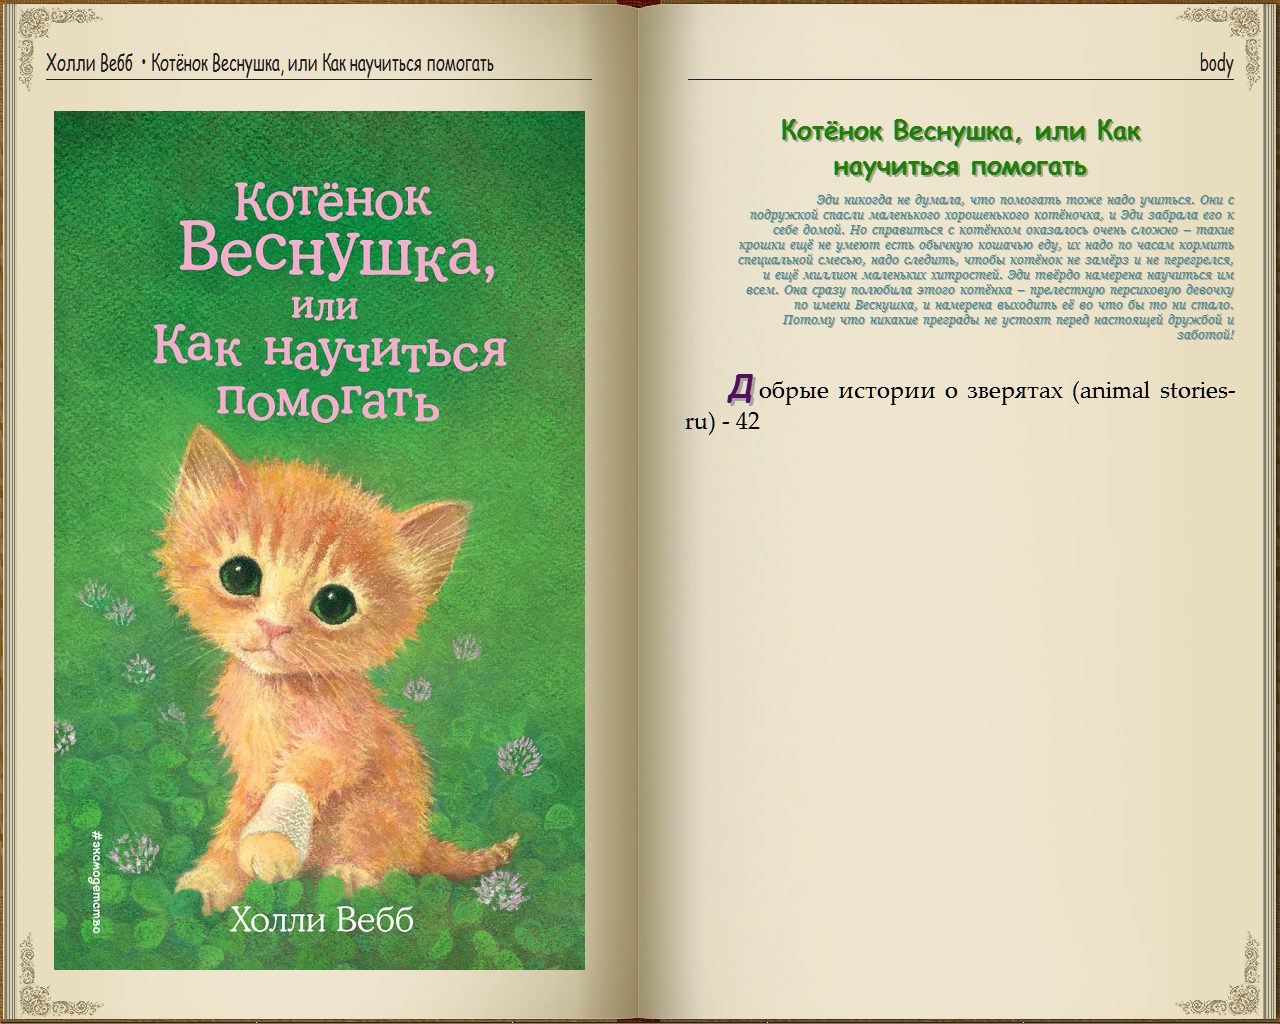 Книжки Холли Вебб про котят и щенят. Холли Вебб книги про котят и щенят. Книжки Холли Вебб про животных. Книги Холли Вебб про животных на русском.